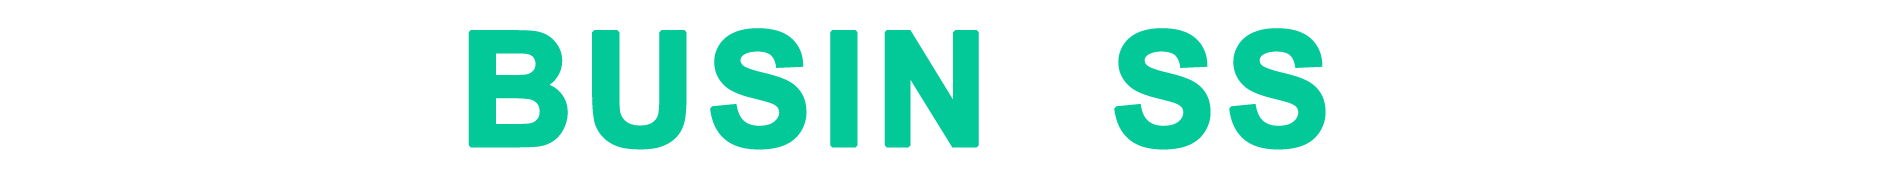 Live-business-logo